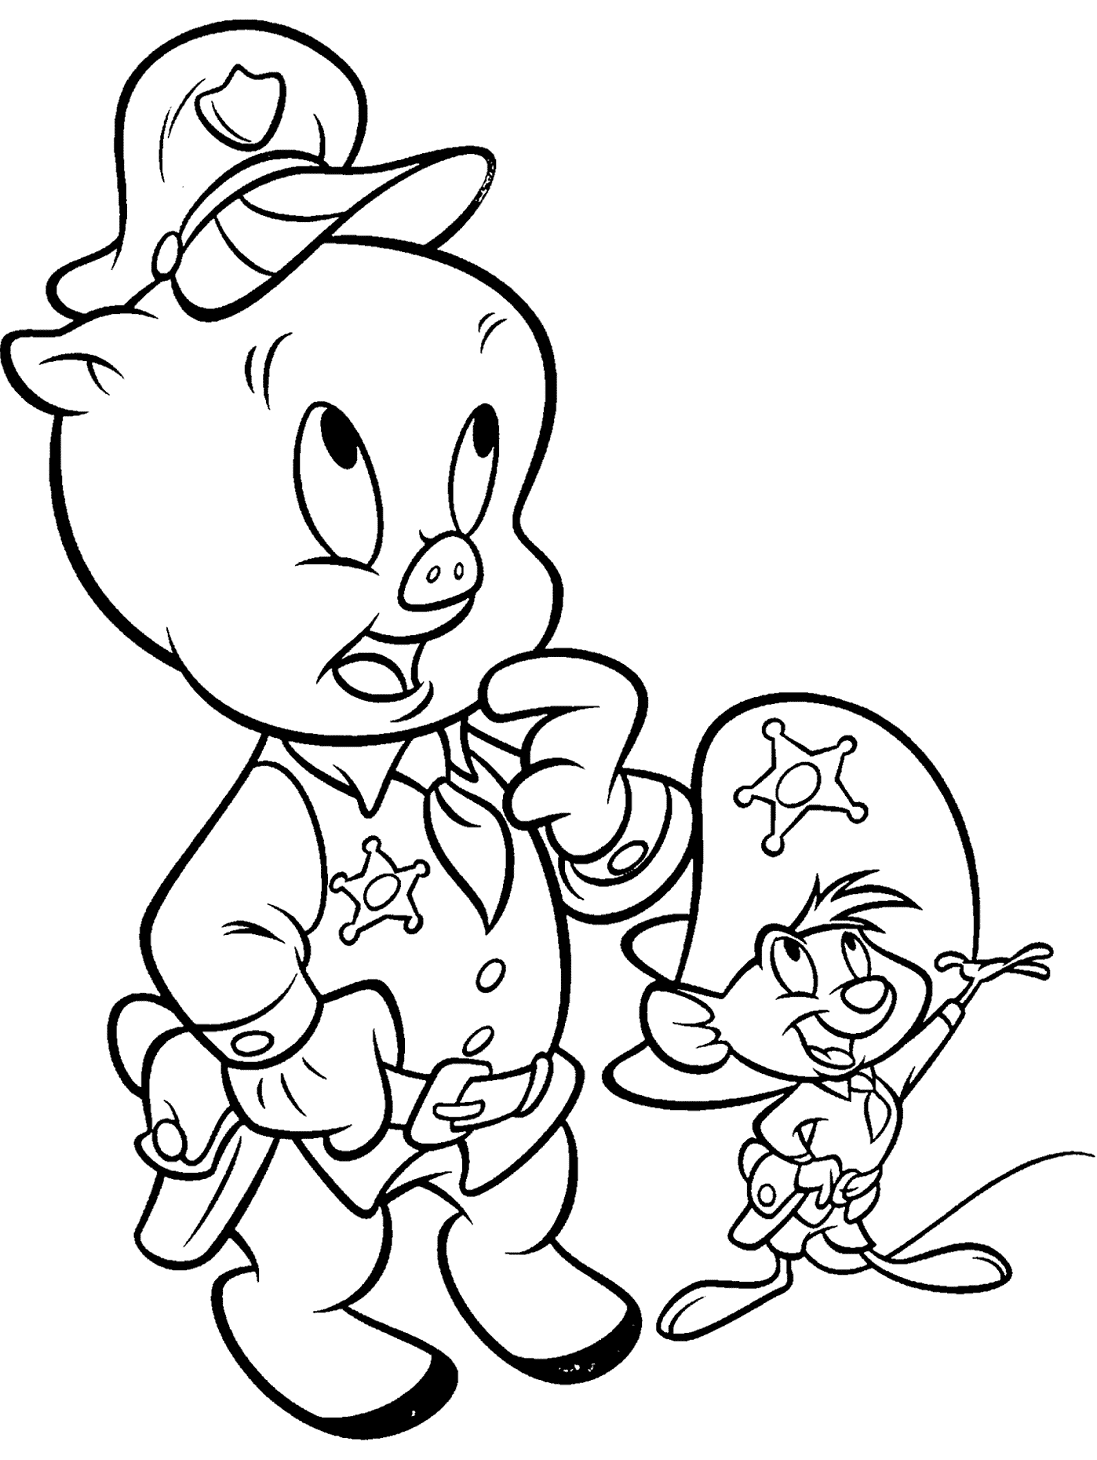 Porky Pig y Speedy González de los personajes de Looney Tunes